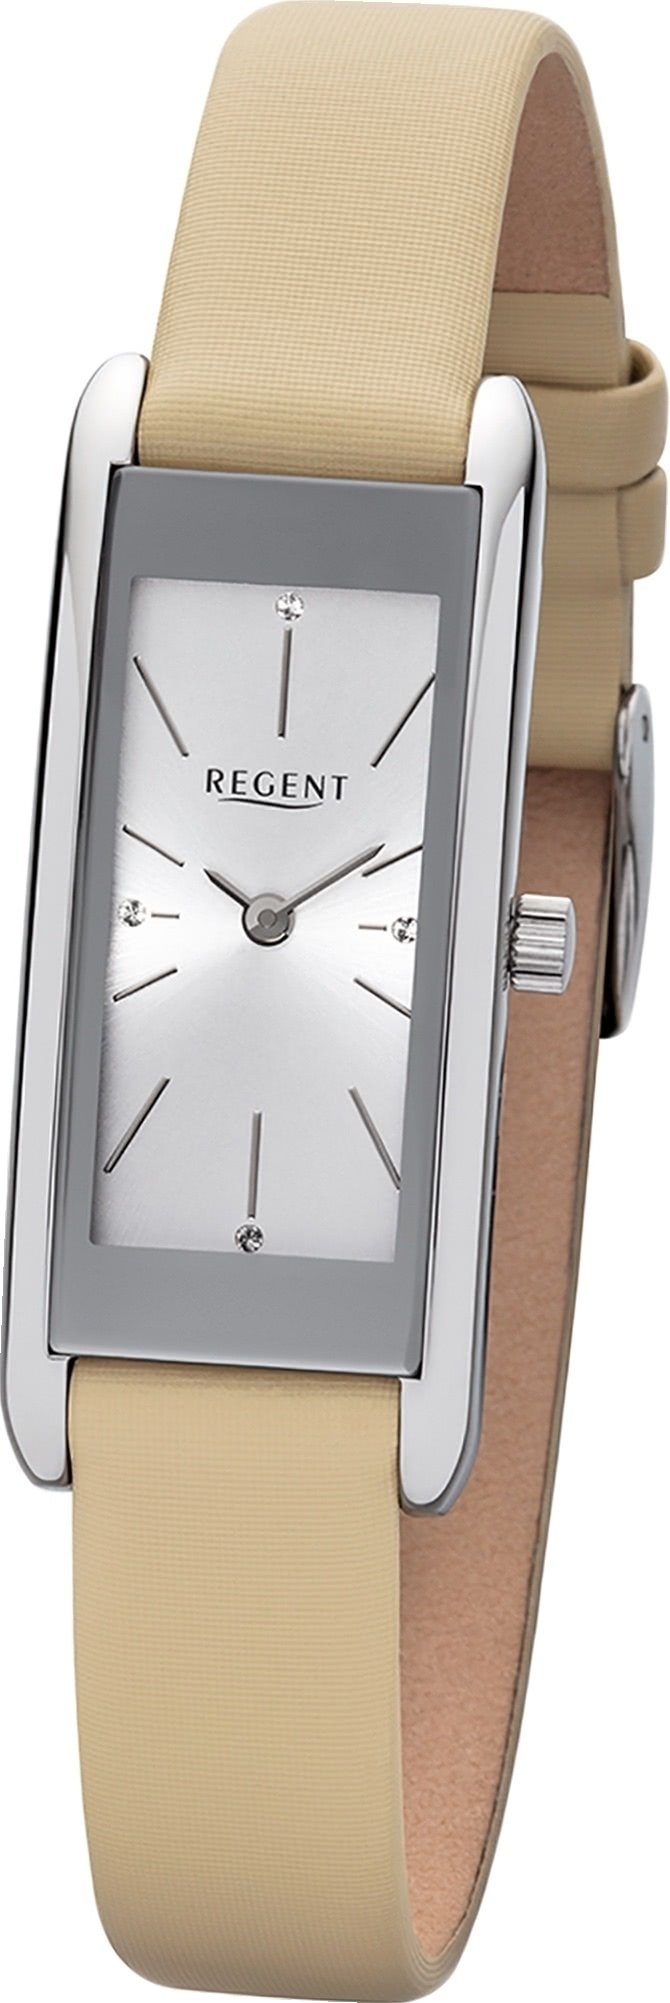 Regent Quarzuhr »Regent Leder Damen Uhr BA-458 Analog«, (Analoguhr),  Damenuhr mit Lederarmband, eckiges Gehäuse, groß (ca. 41mm), Elegant-Style